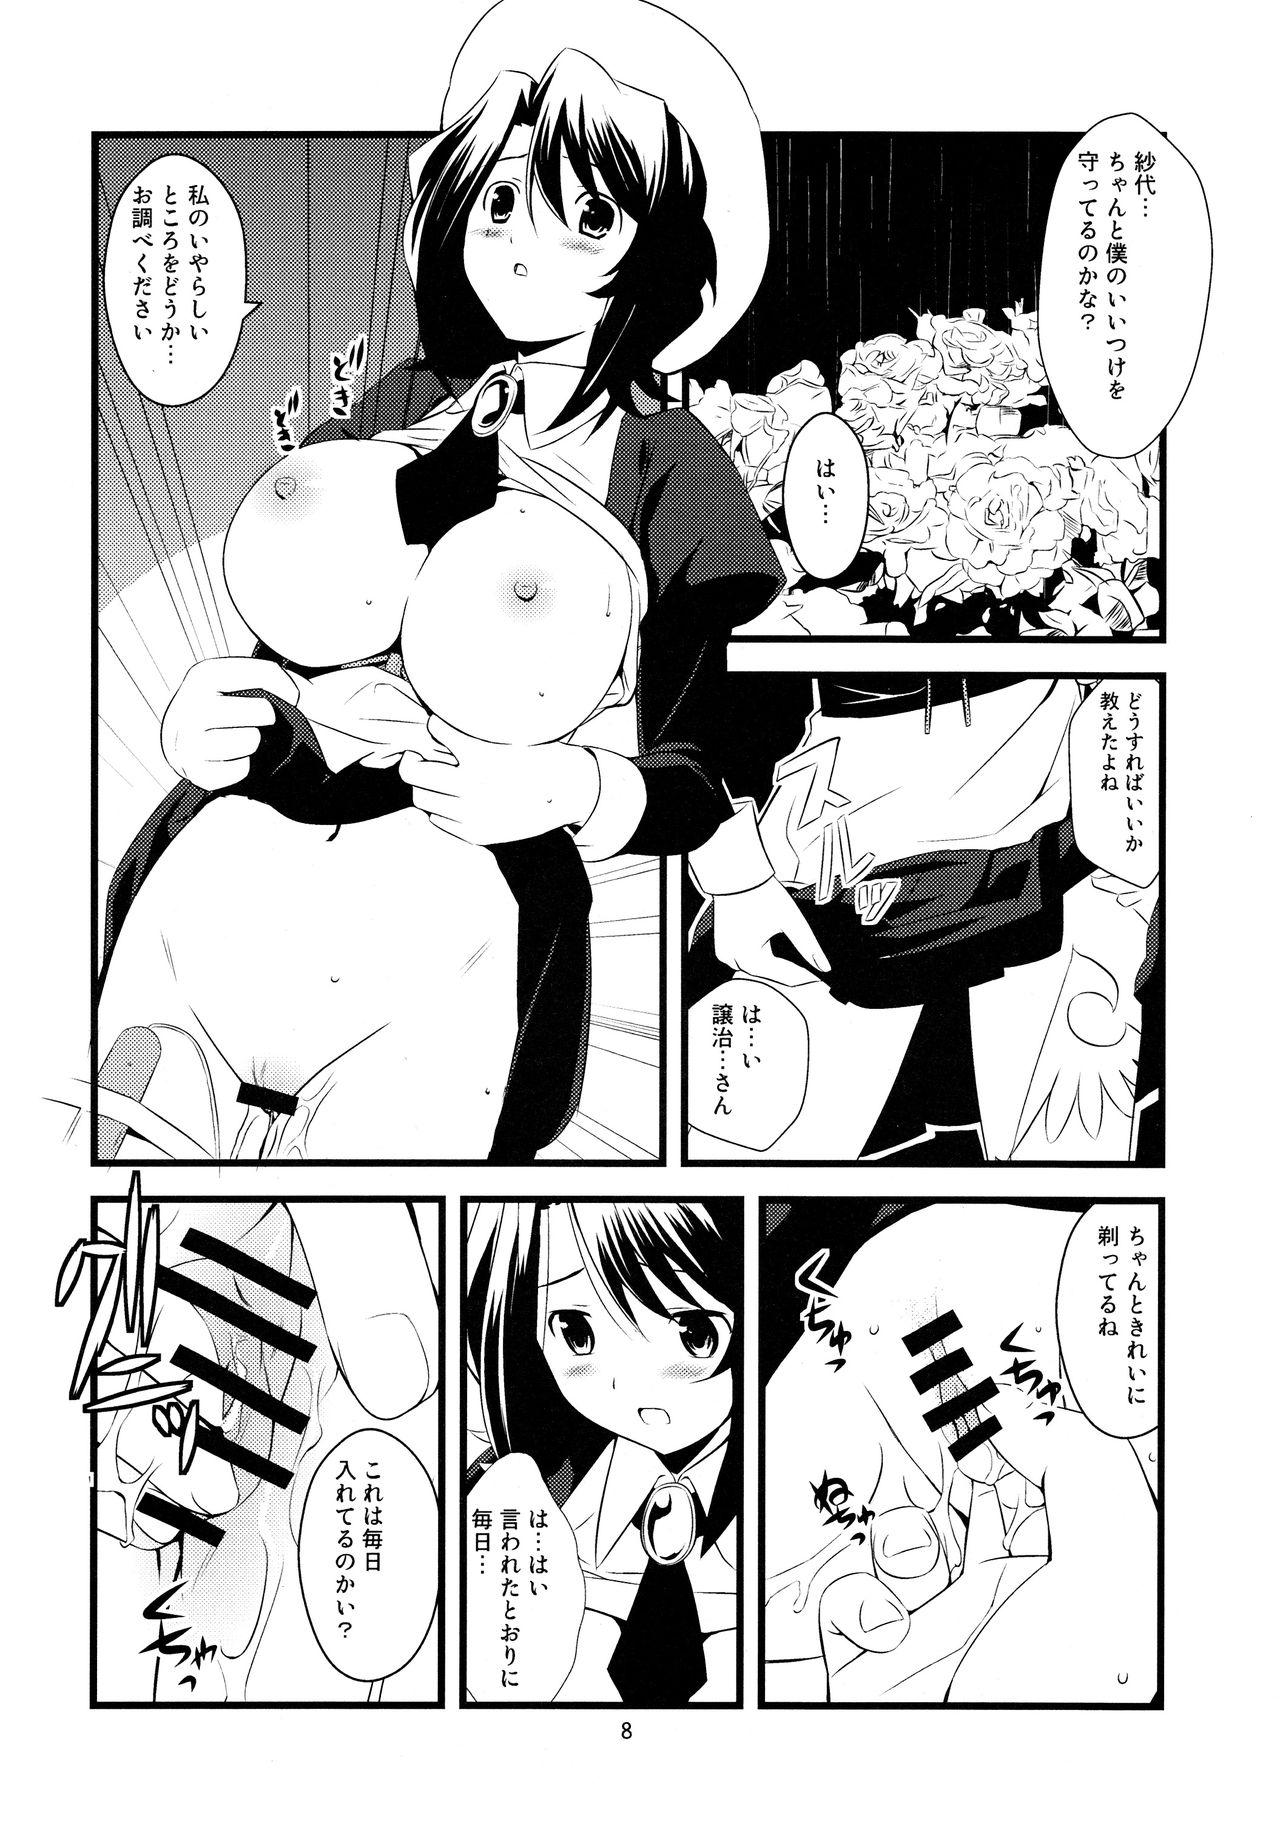 Tats Super Size! Milky Maiden - Higurashi no naku koro ni Umineko no naku koro ni Mofos - Page 9